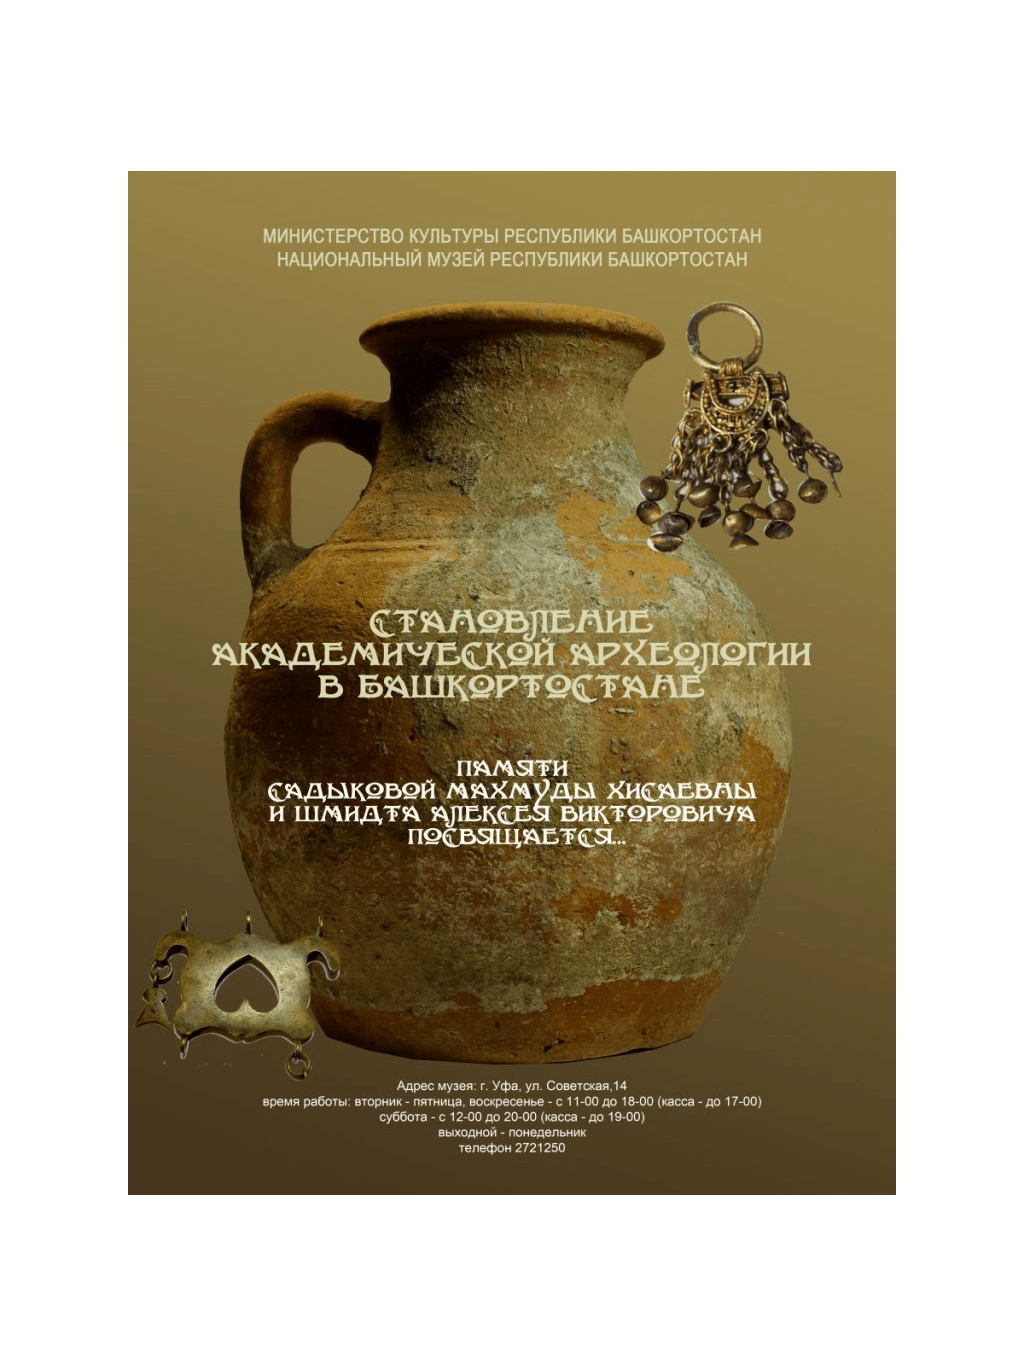 В Уфе состоится открытие выставки «Становление академической археологии в Башкортостане»